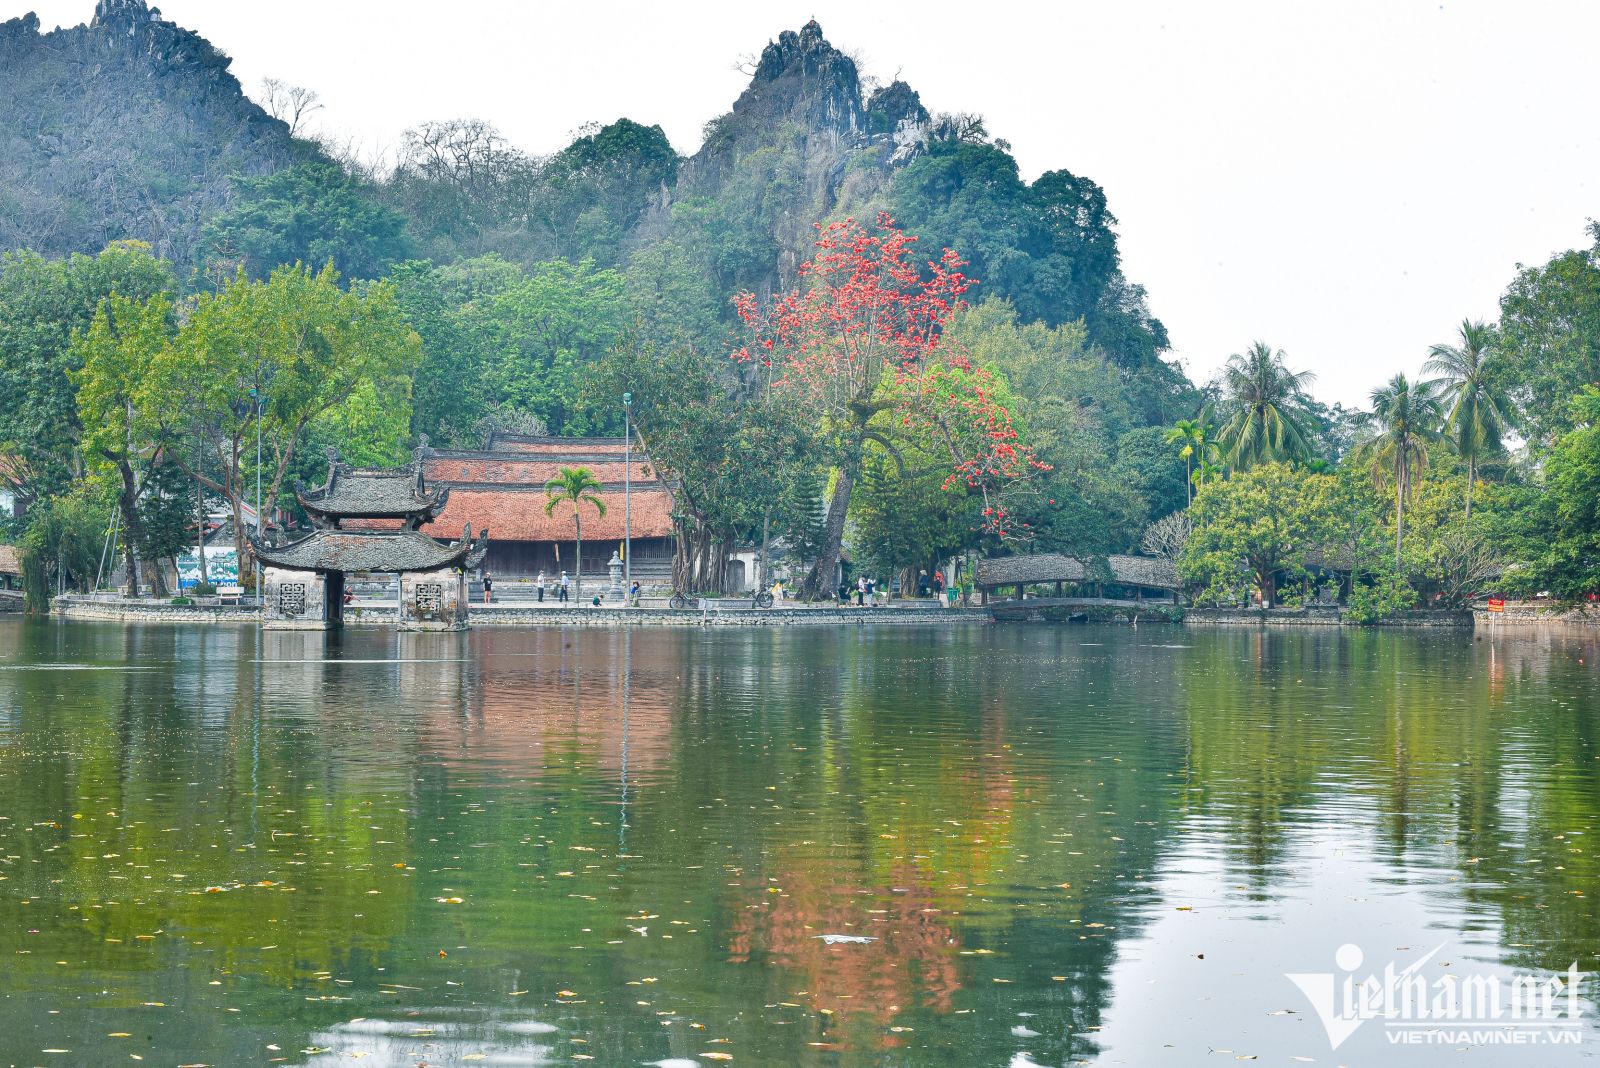 Ngôi chùa ngàn năm tuổi ở Hà Nội thành điểm du lịch Di tích quốc gia đặc biệt